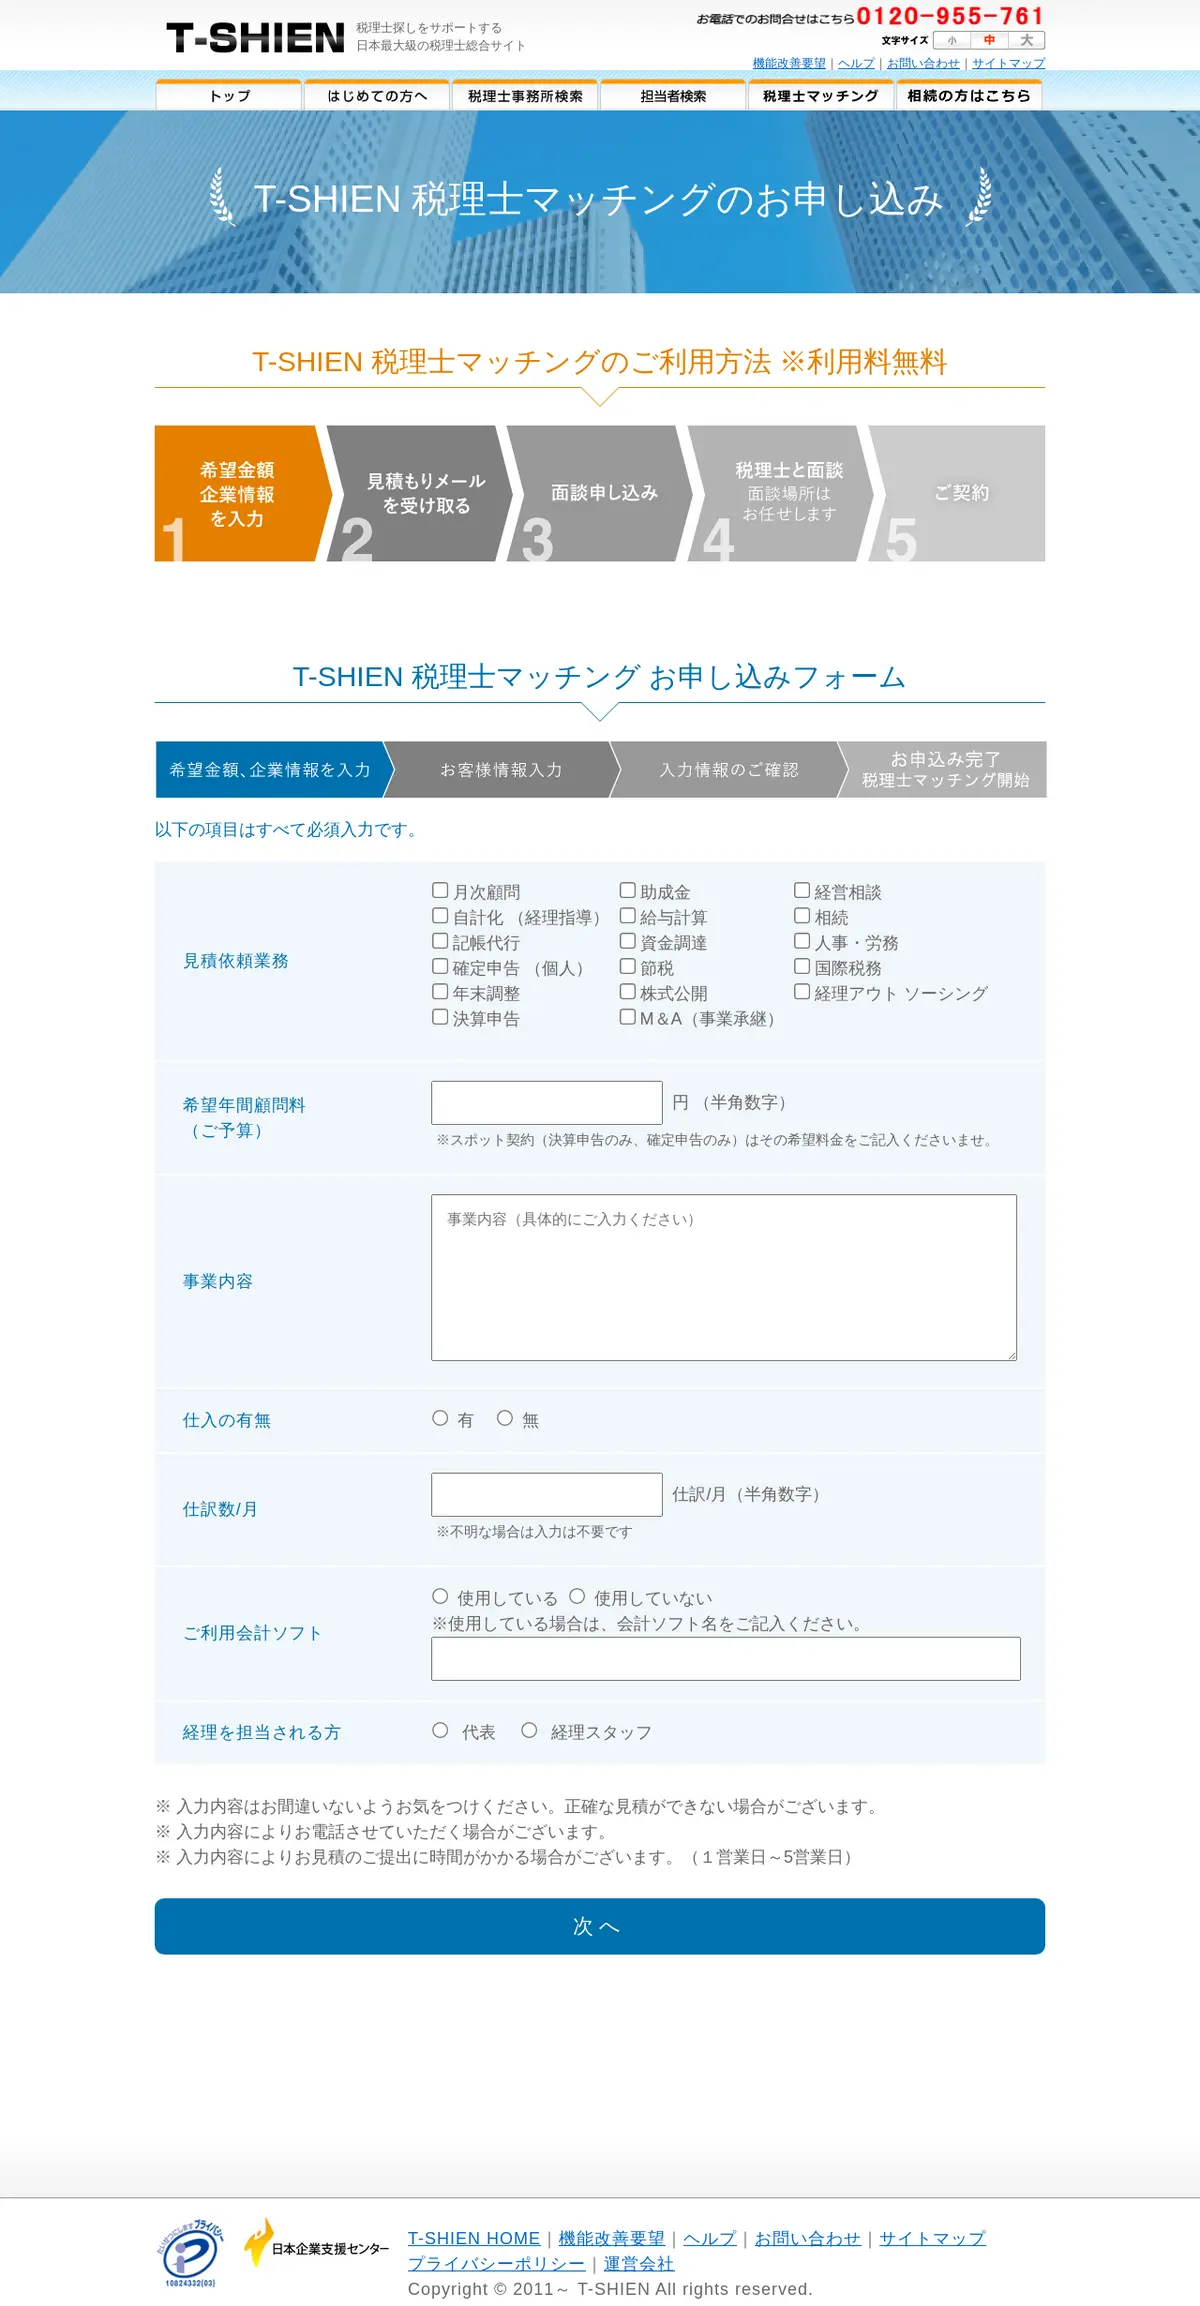 キャプチャ画面 会社名:日本企業支援センター株式会社プロジェクト名:T-SHIEN 画面名:申し込みフォーム デバイス名:PCカテゴリ:WEB・インターネットタグ:申し込みフォーム,PC